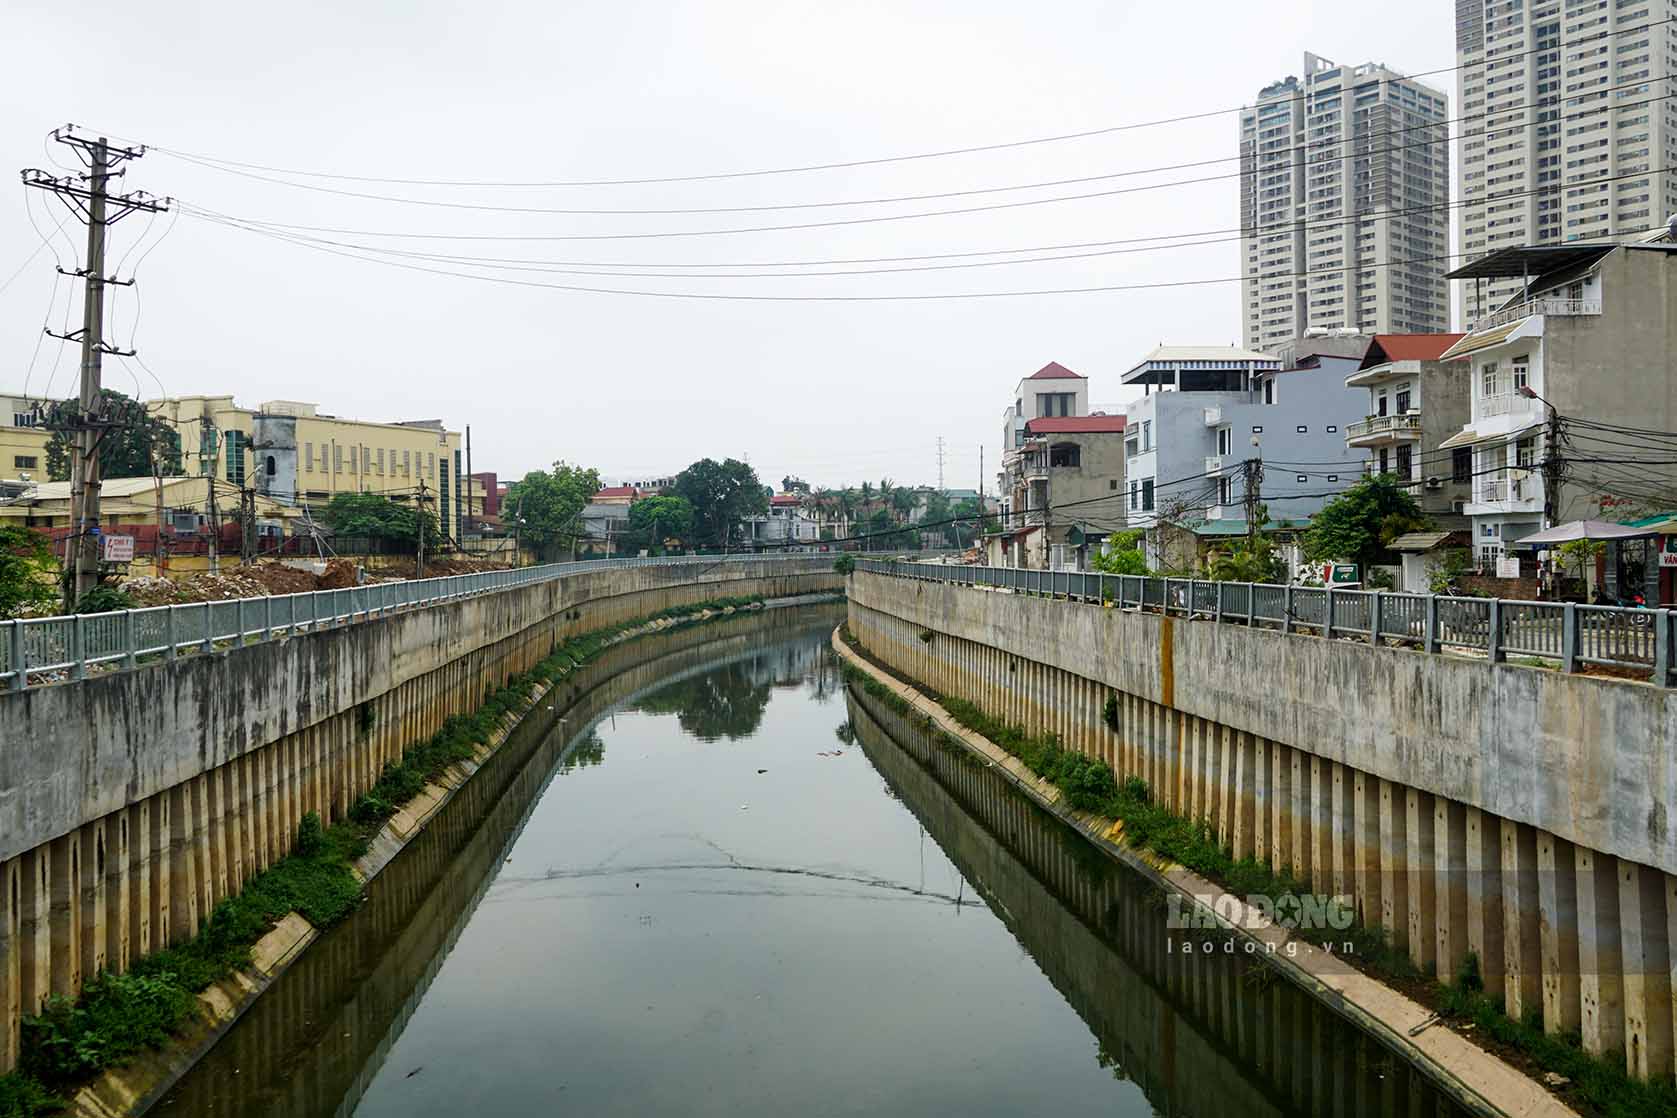 Dự án Cải thiện hệ thống tiêu thoát nước khu vực phía Tây TP Hà Nội (Trạm bơm tiêu Yên Nghĩa) gồm 2 hạng mục chính: Hạng mục cụm công trình đầu mối và tuyến kênh dẫn La Khê.